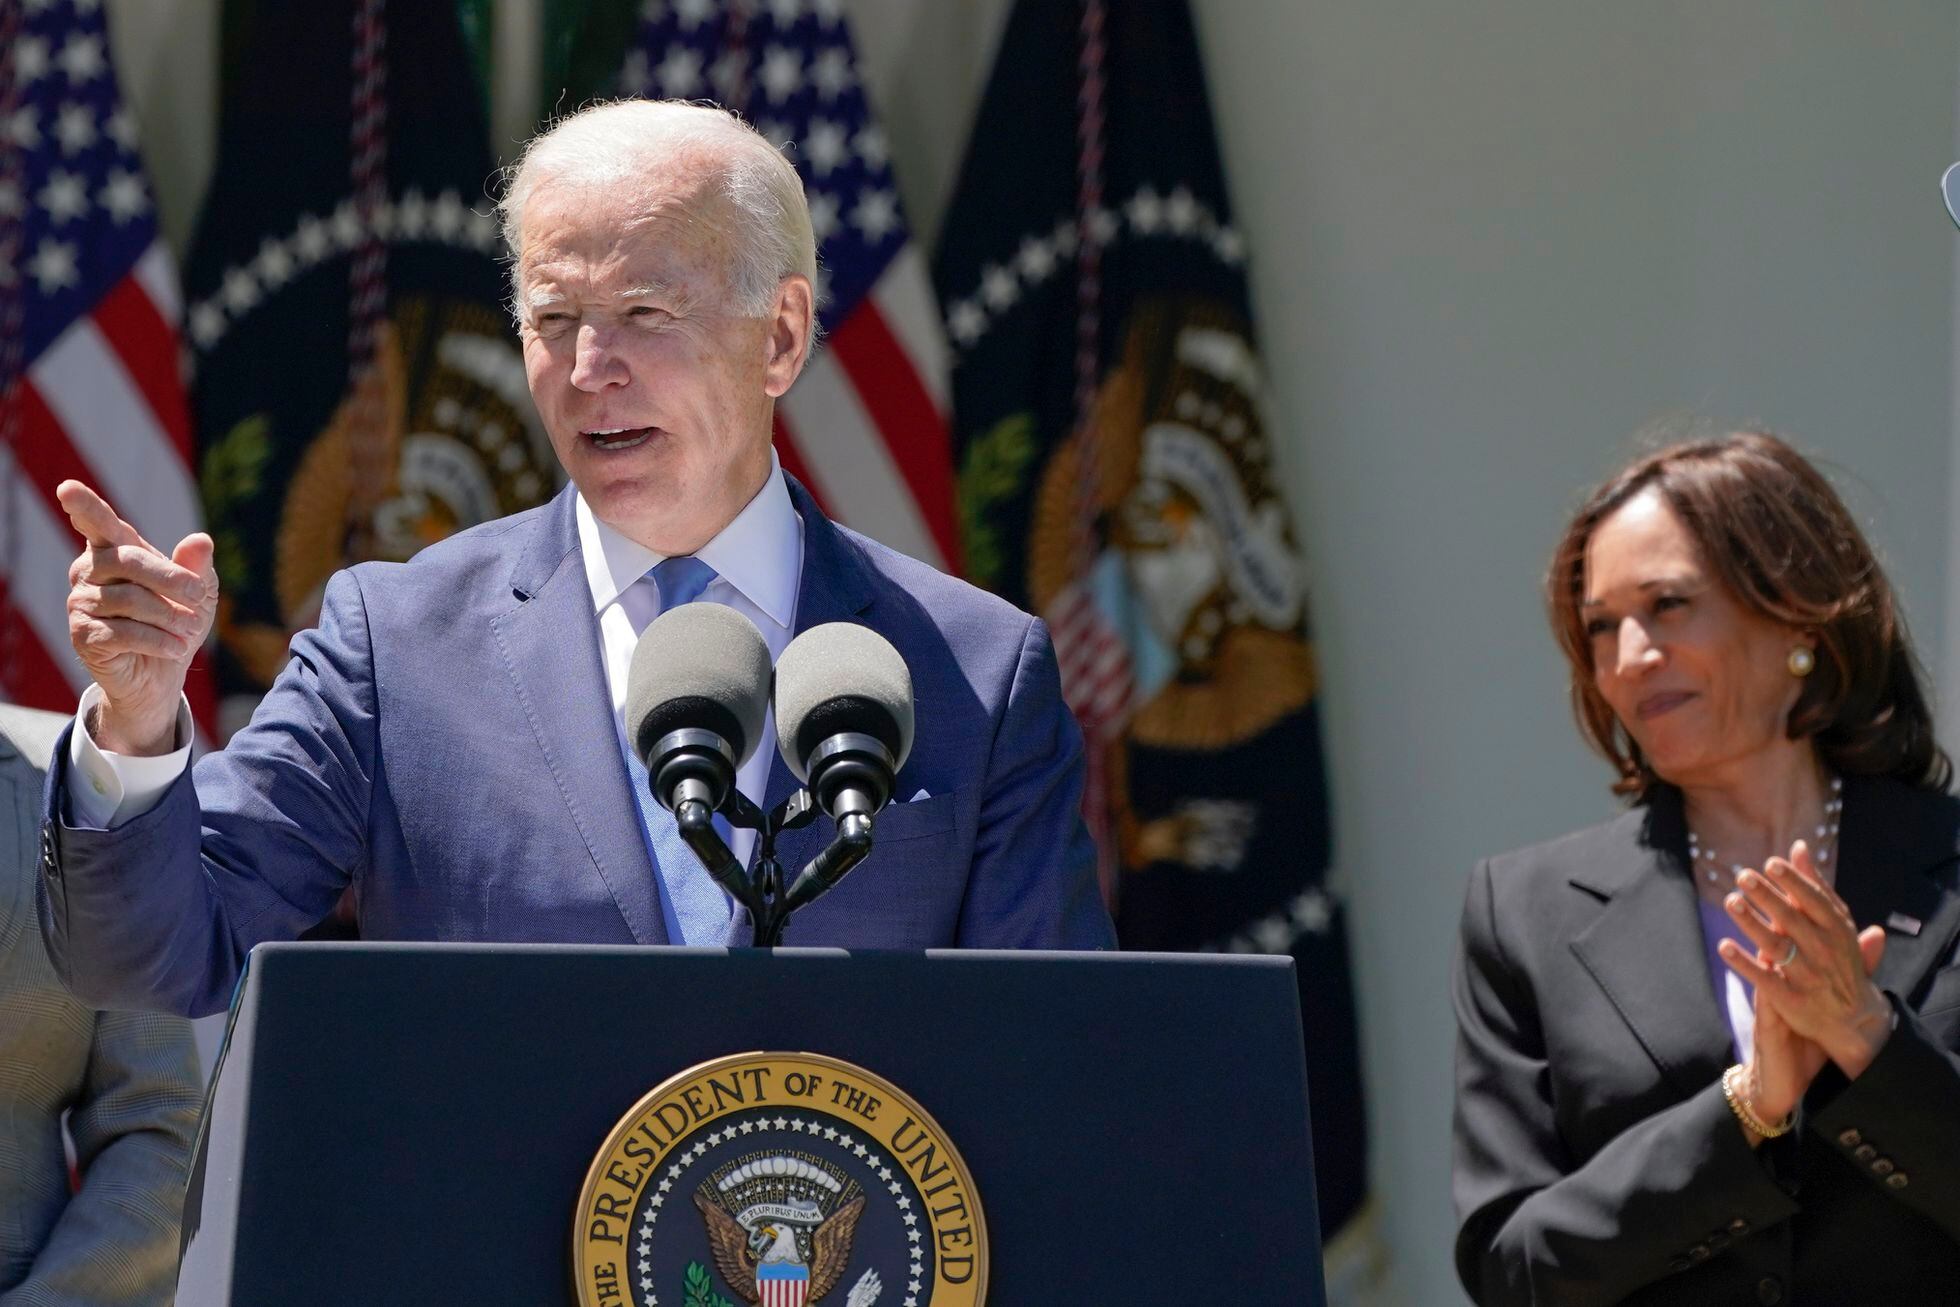 Joe Biden y Kamala Harris, este lunes en un acto en la Casa Blanca.